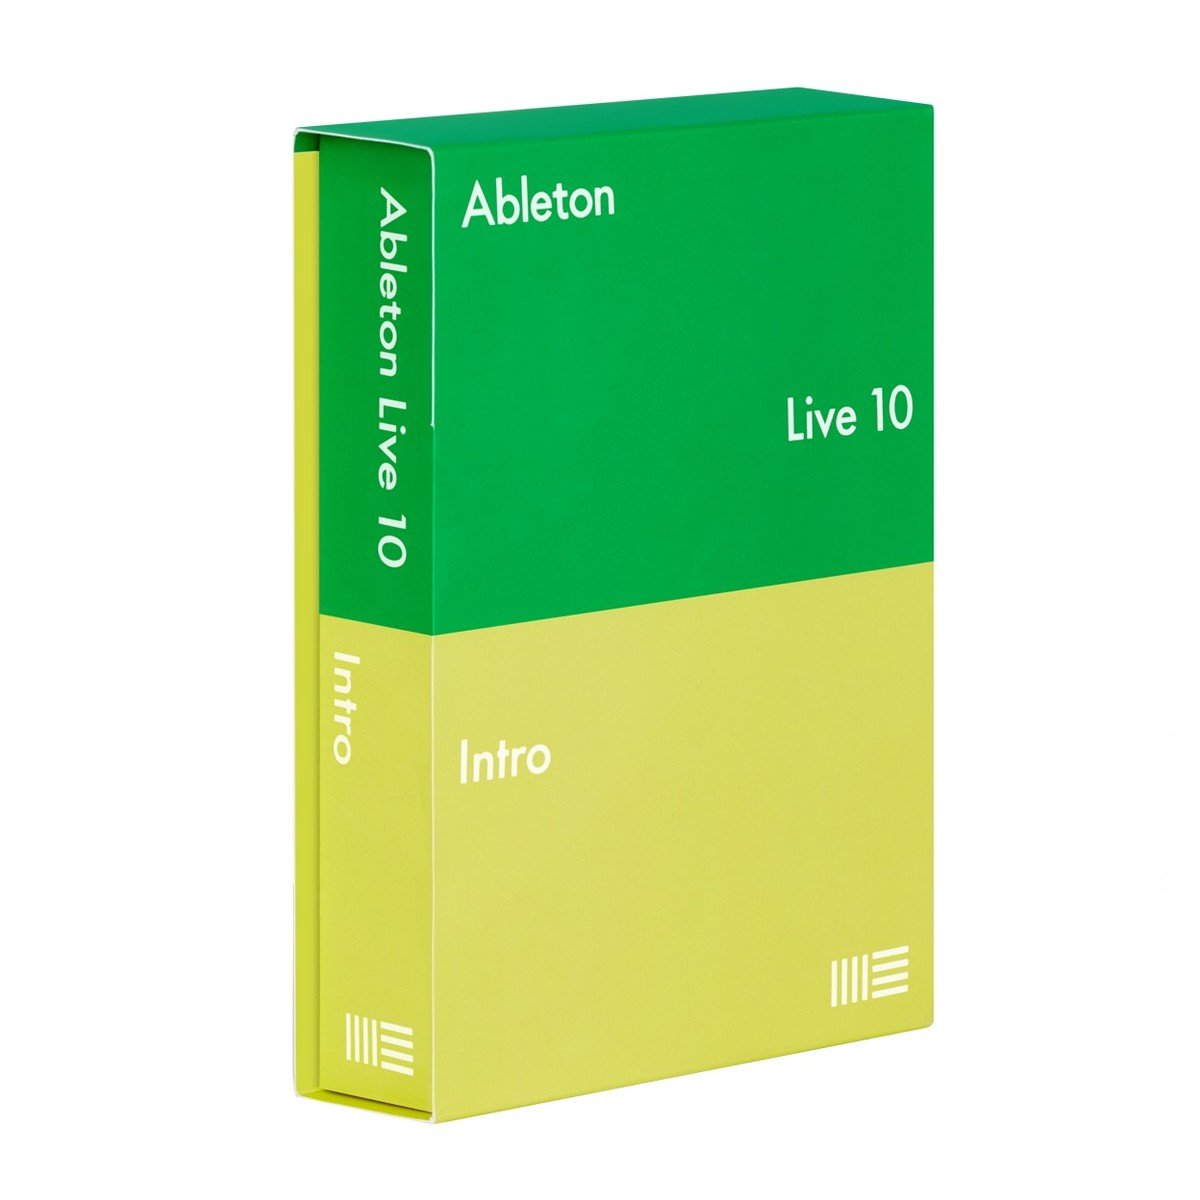 buy ableton live 10 download or hard disk